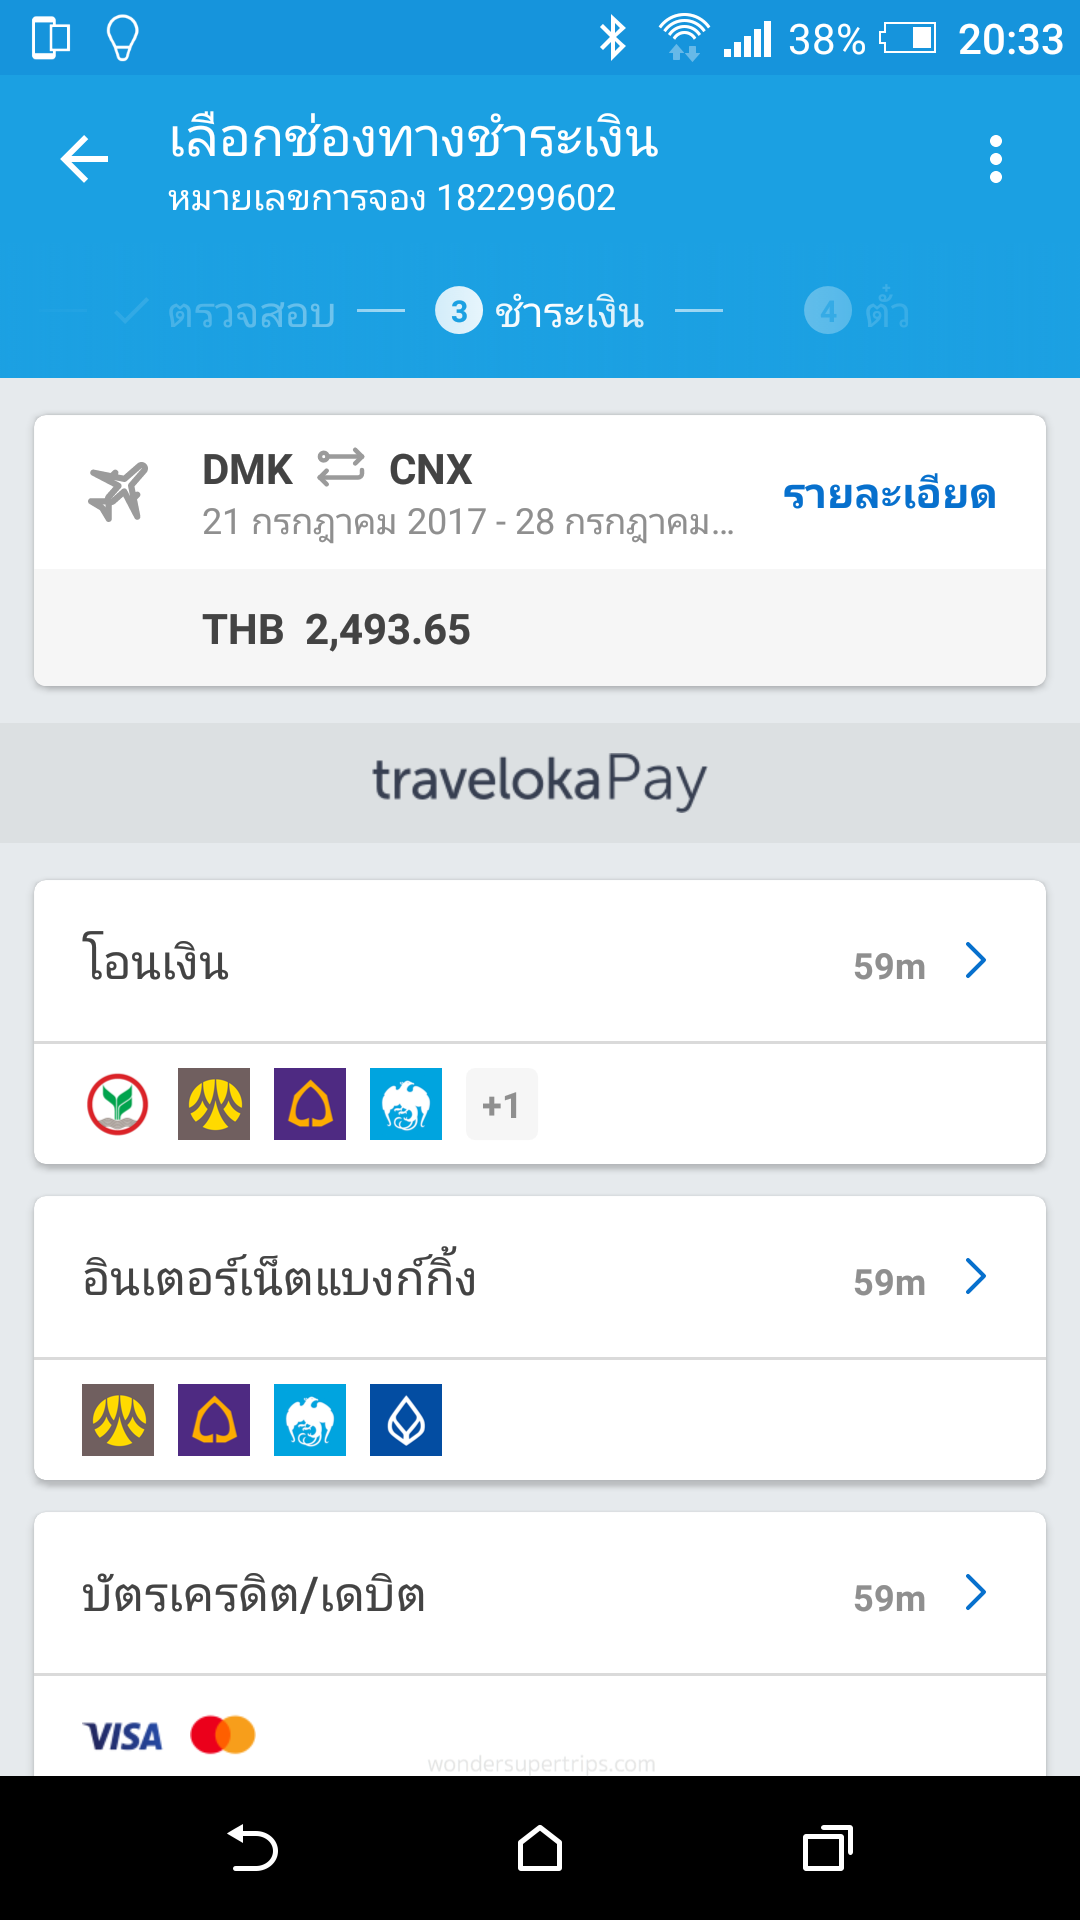 ชำระเงิน จองตั๋วเครื่องบิน ด้วย Traveloka